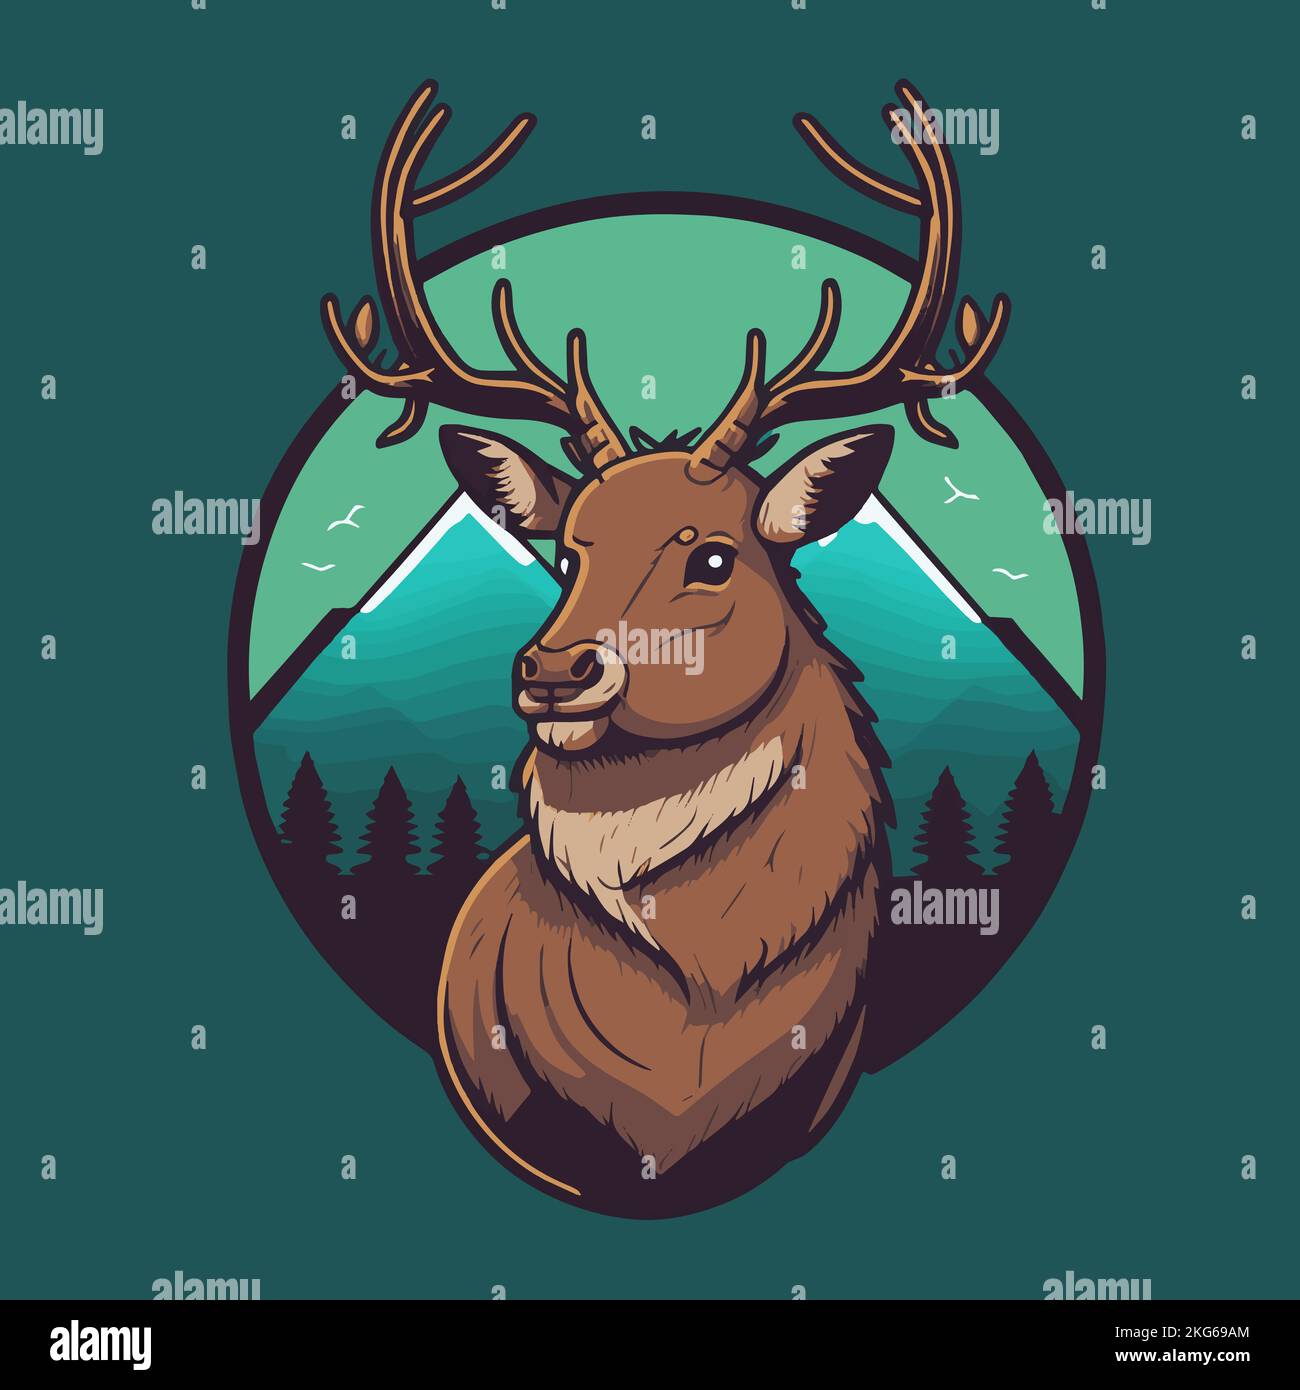 Deer Head Mascot Logo Illustration for Poster Design Stock Vector Image ...